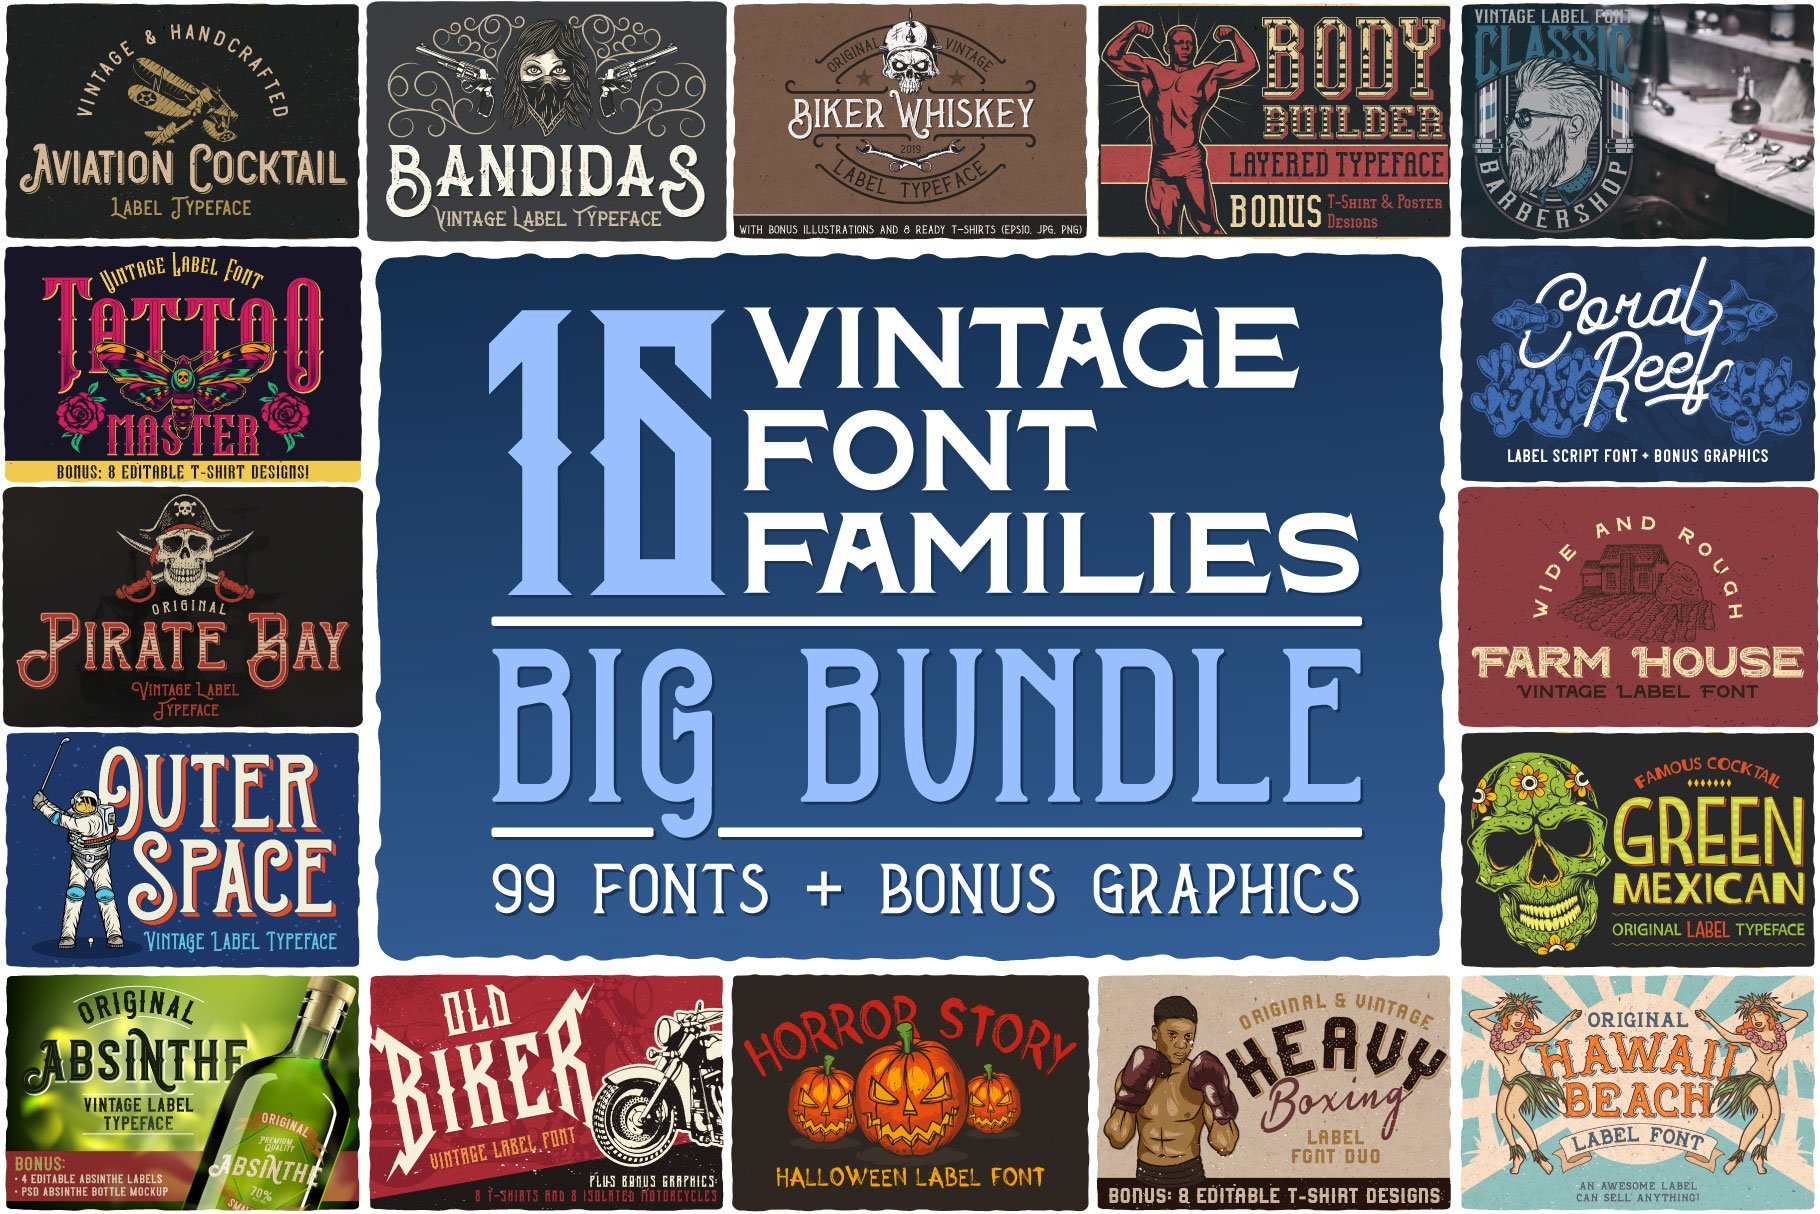 16 Font Families Bundle cover image.